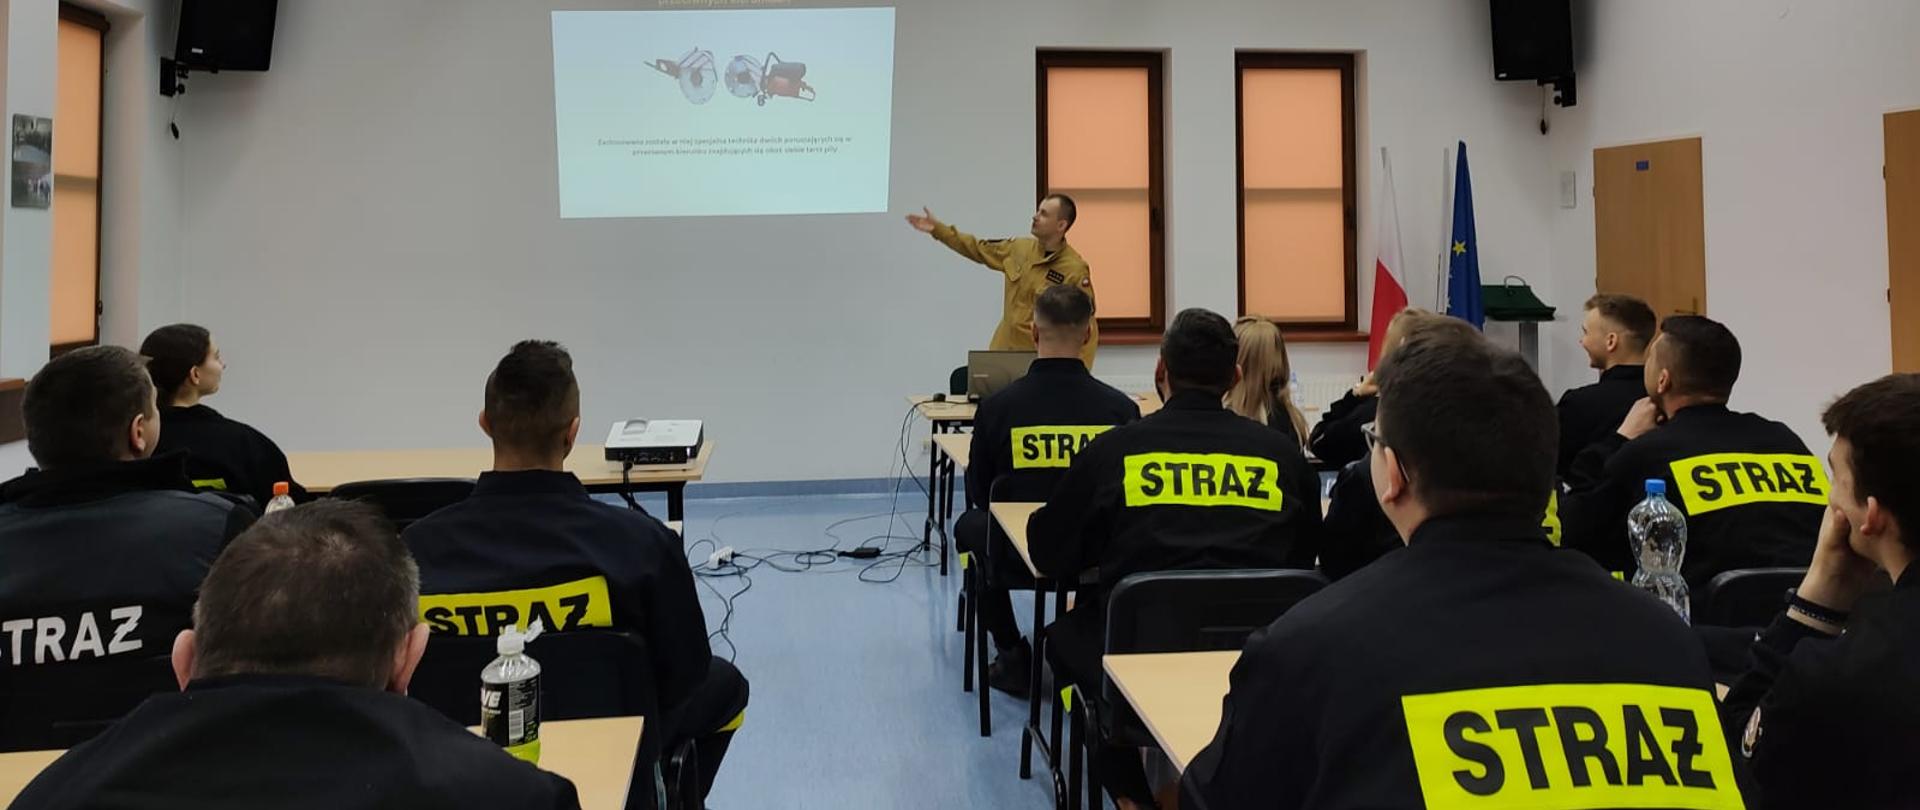 Szkolenie podstawowe strażaków ratowników OSP 1.2023 - druhowie OSP podczas zajęć nabywają umiejętności i kwalifikacje niezbędne do bezpośredniego udziału w działaniach ratowniczo gaśniczych